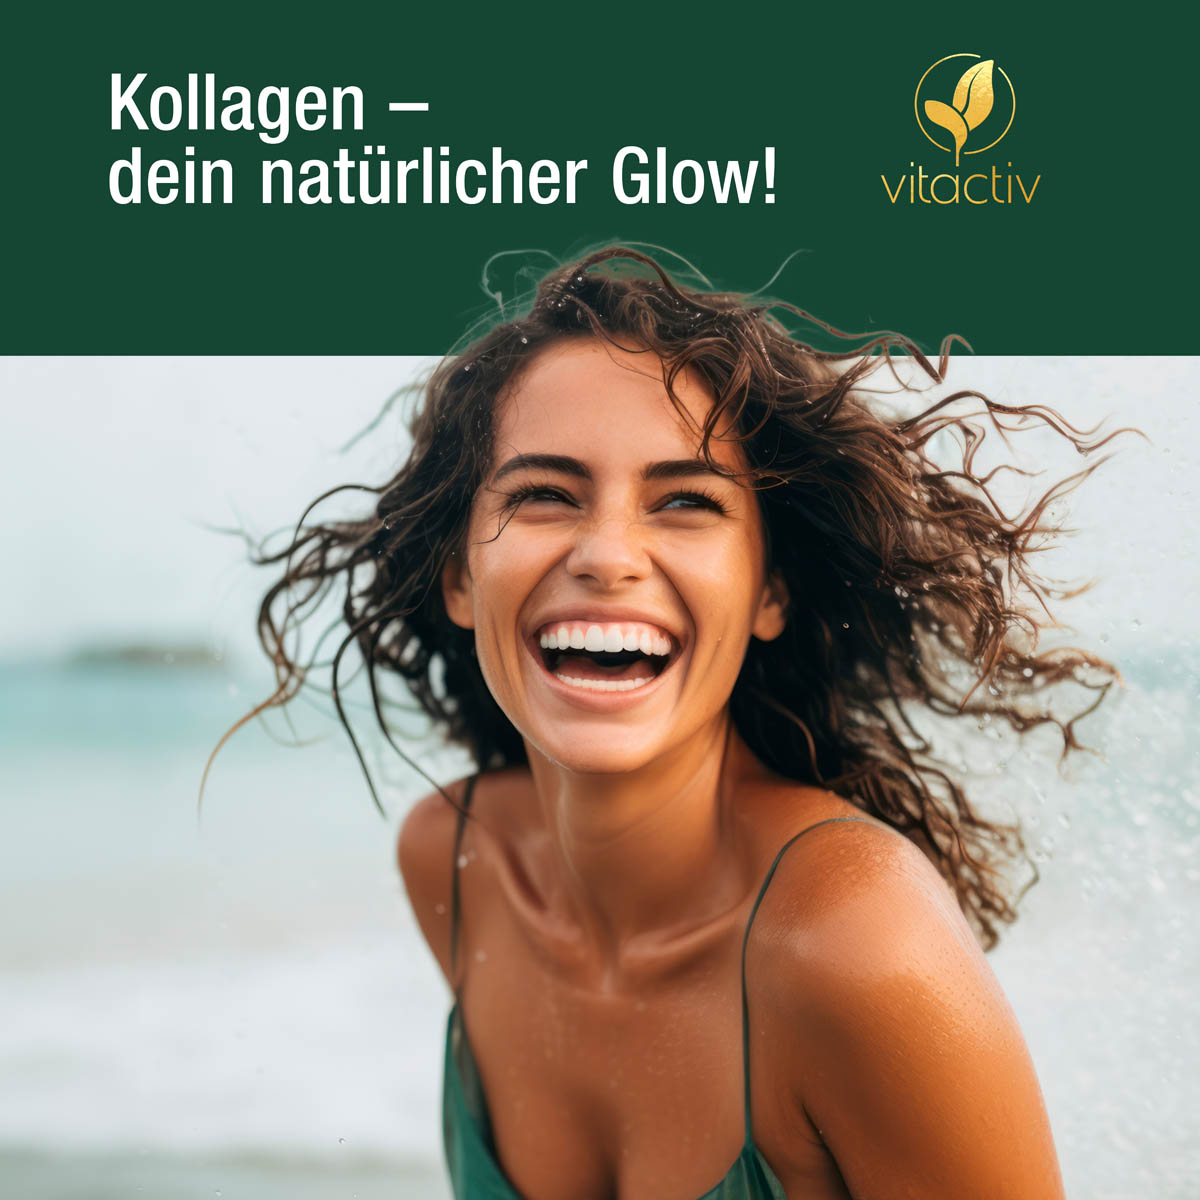 Das Bild zeigt eine junge fröhliche Frau. Sie freut sich darüber, dass das Kollagen den natürlichen Glow ihrer Haut unterstützt.